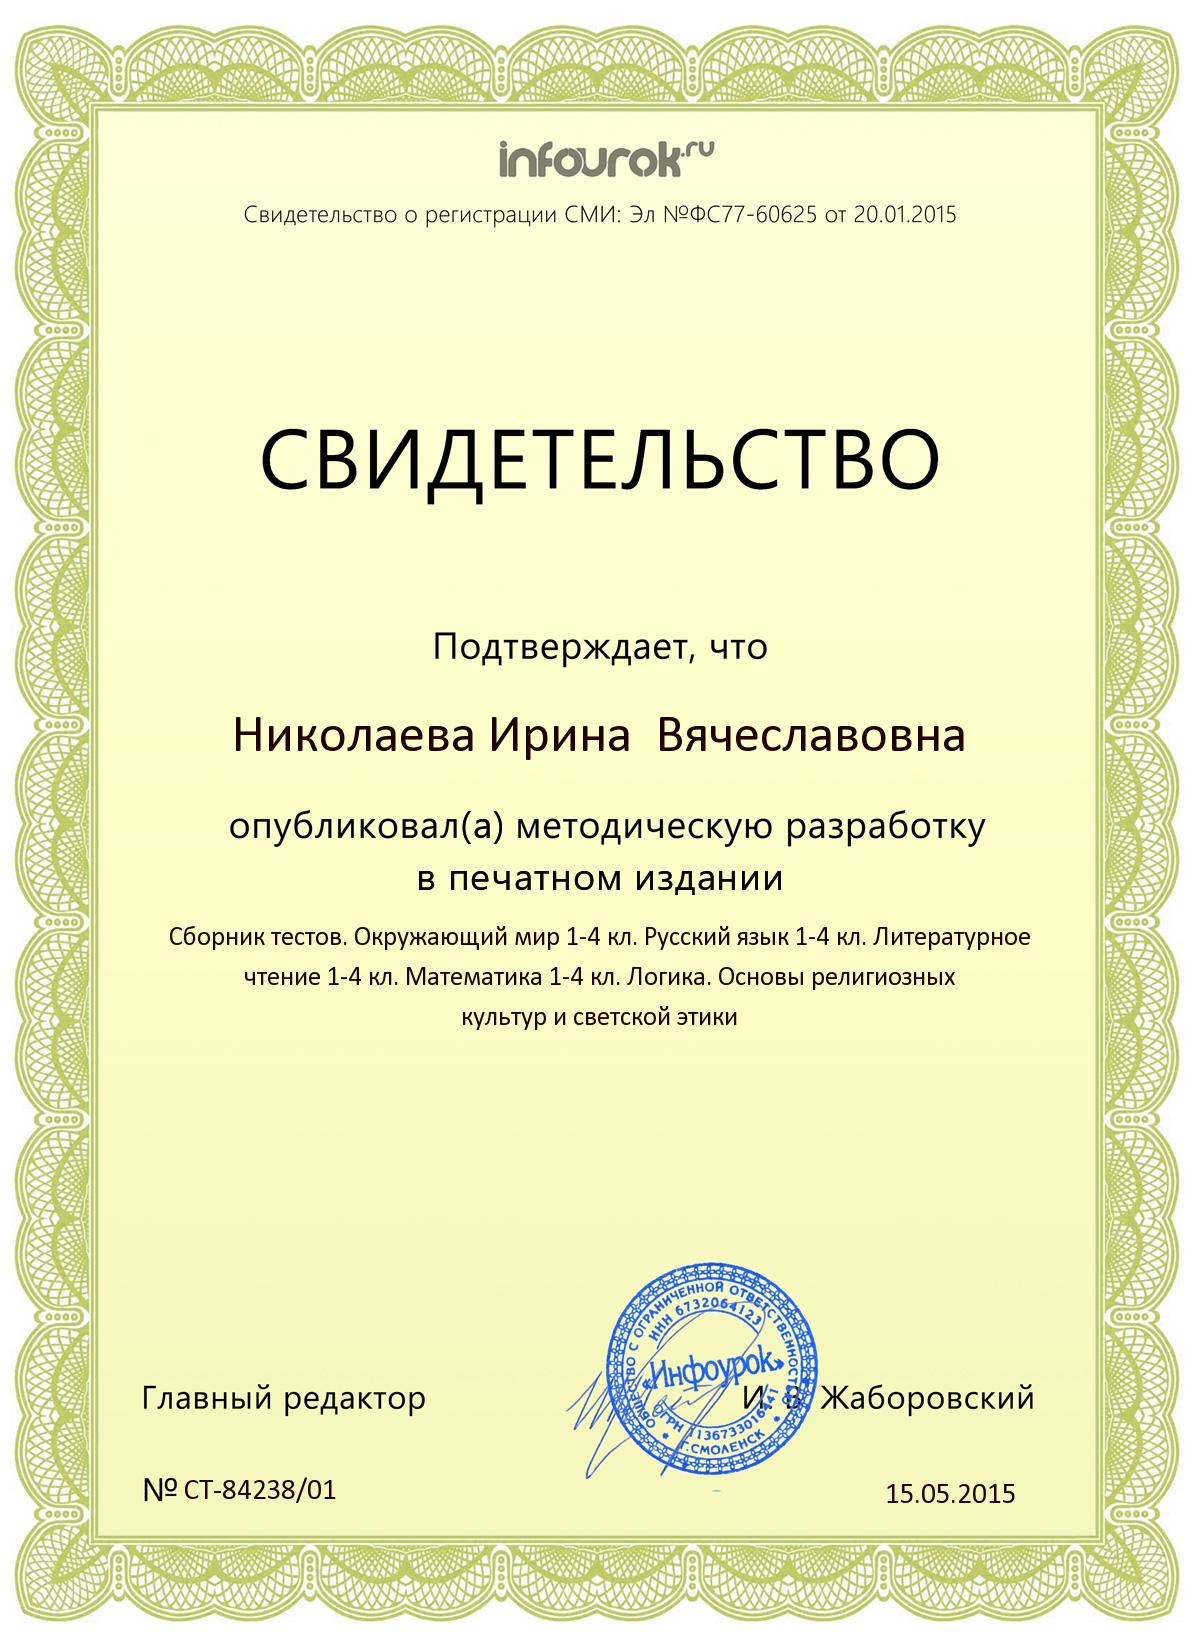 Infourok ru tests. Свидетельство о публикации в сборнике. Сертификат Инфоурок. Инфоурок сертификат о публикации.